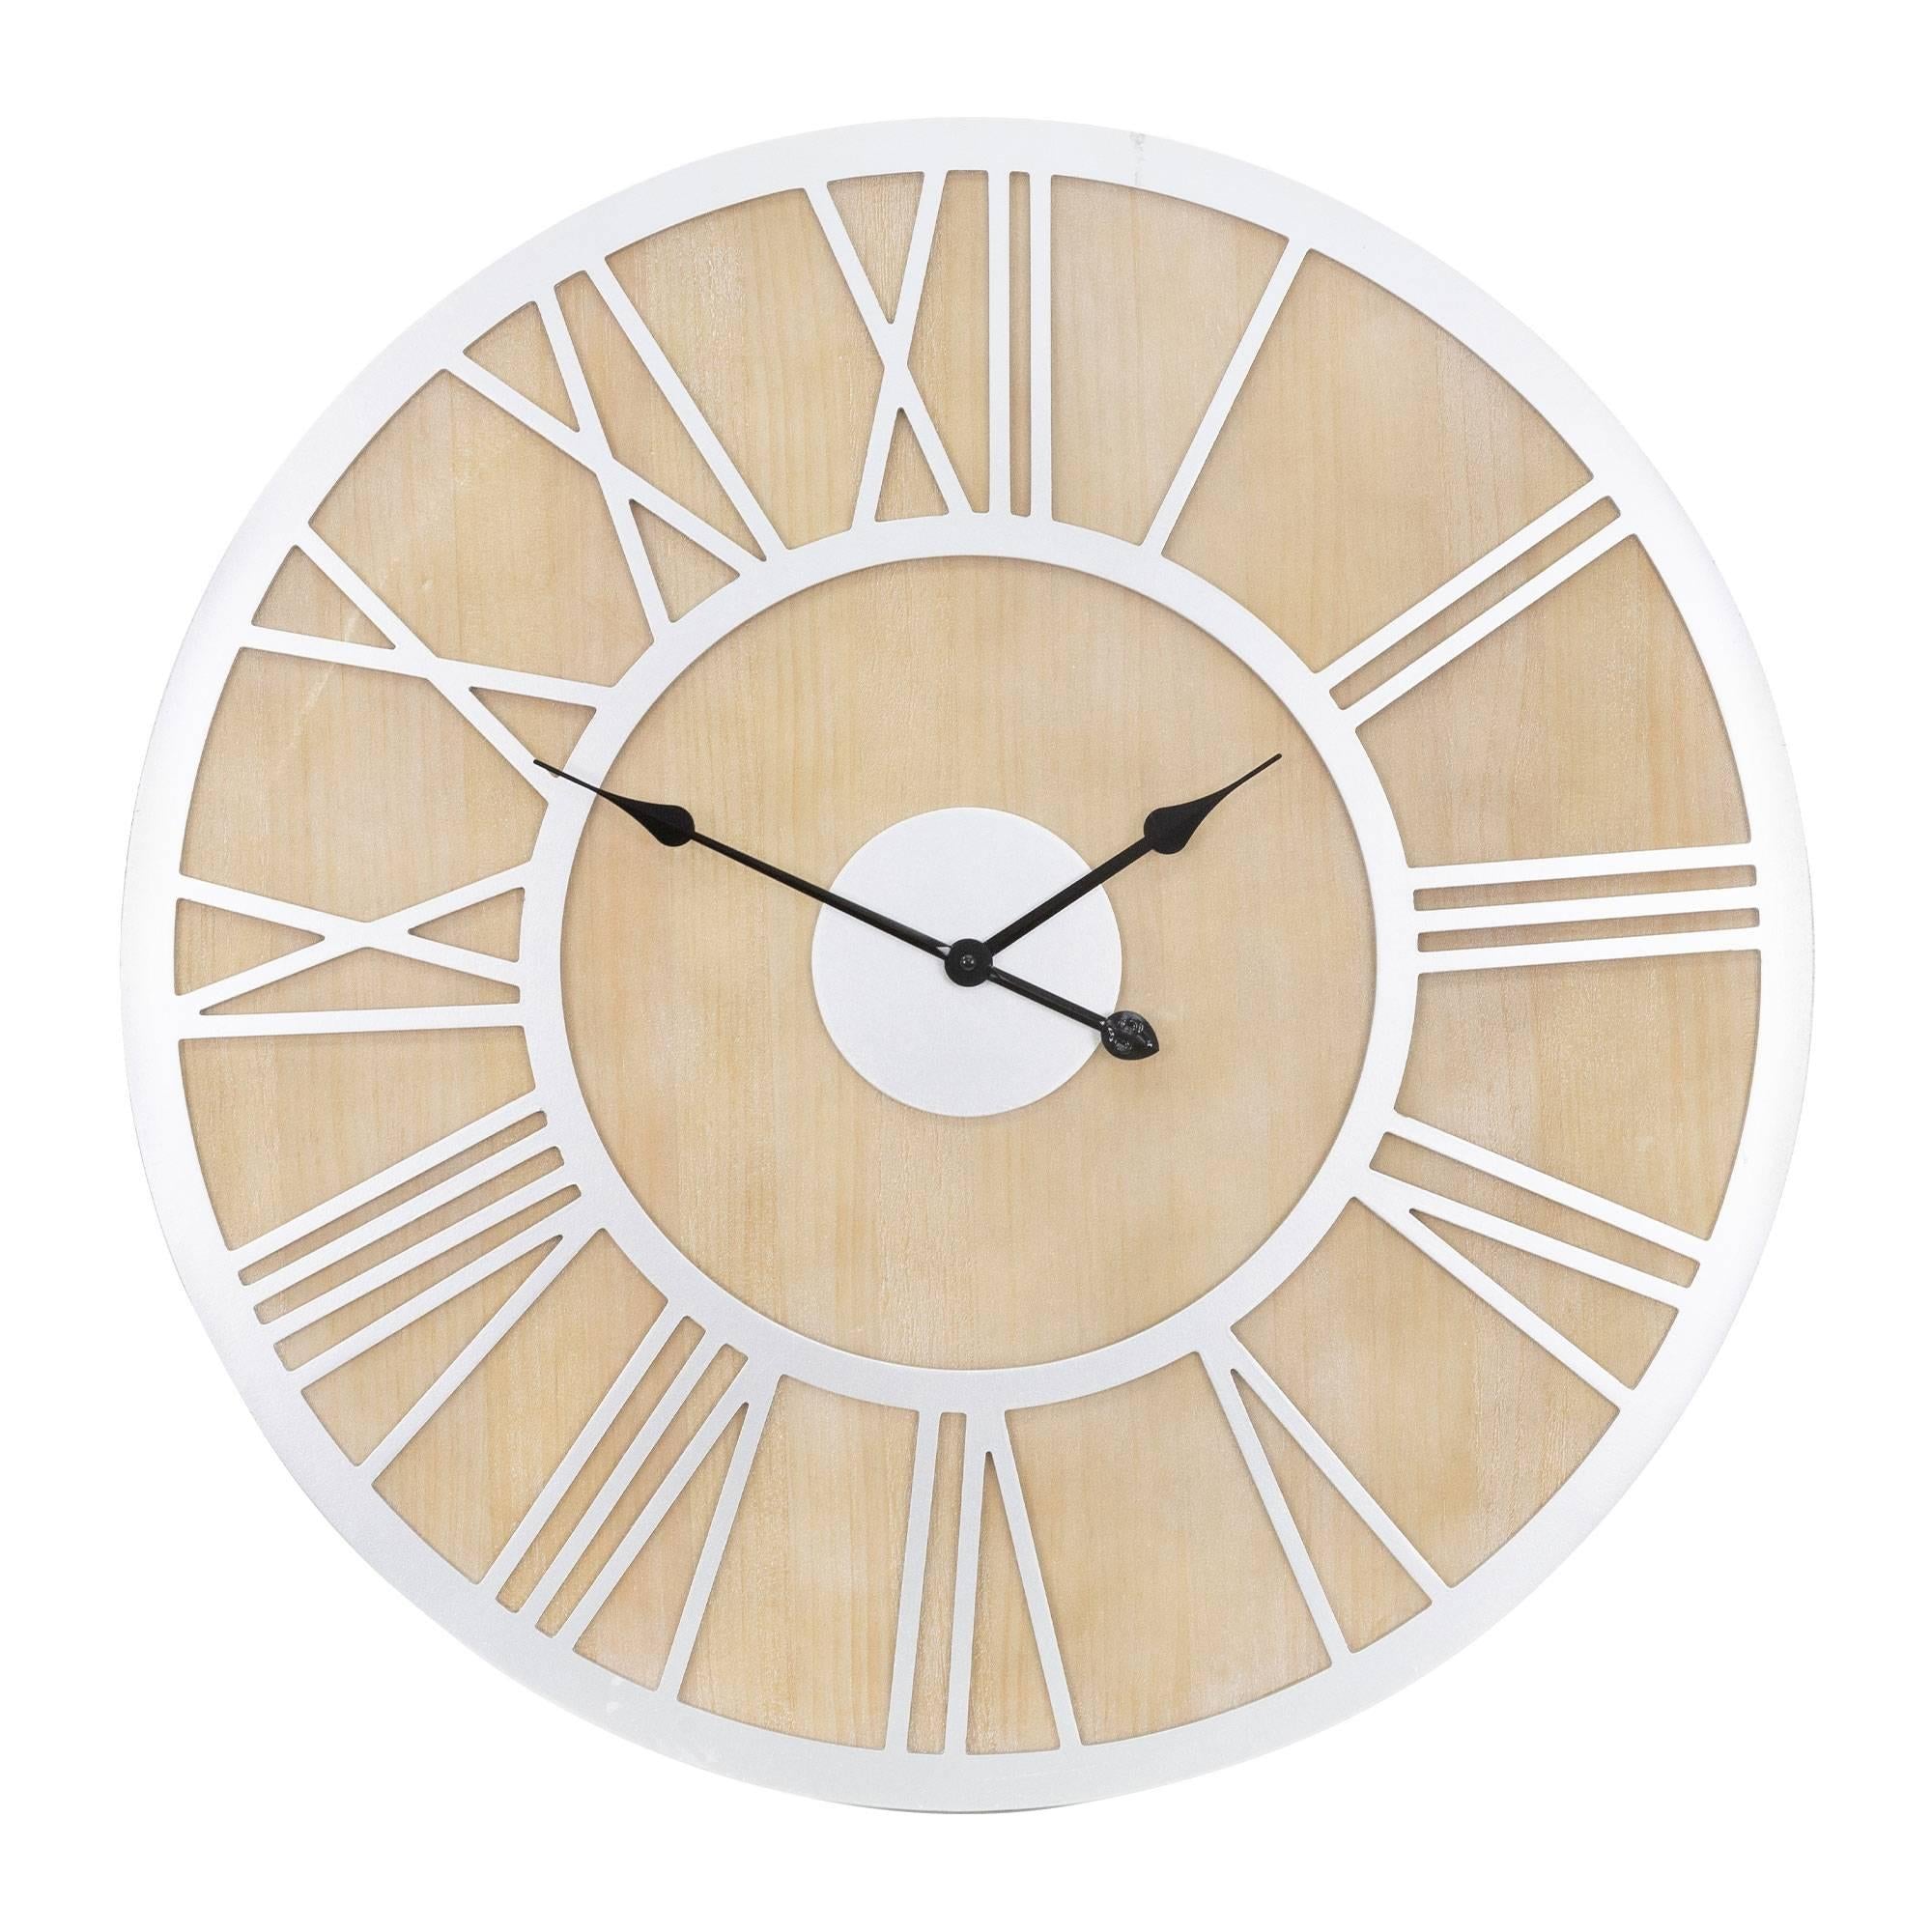 womo-design Große Wanduhr mit Römische Ziffern, ø 85 cm, Weiß/Natur, aus Holz und Metall, Vintage-Stil, Lautlos, Geräuschlosem Uhrwerk, Dekorative Uhr für